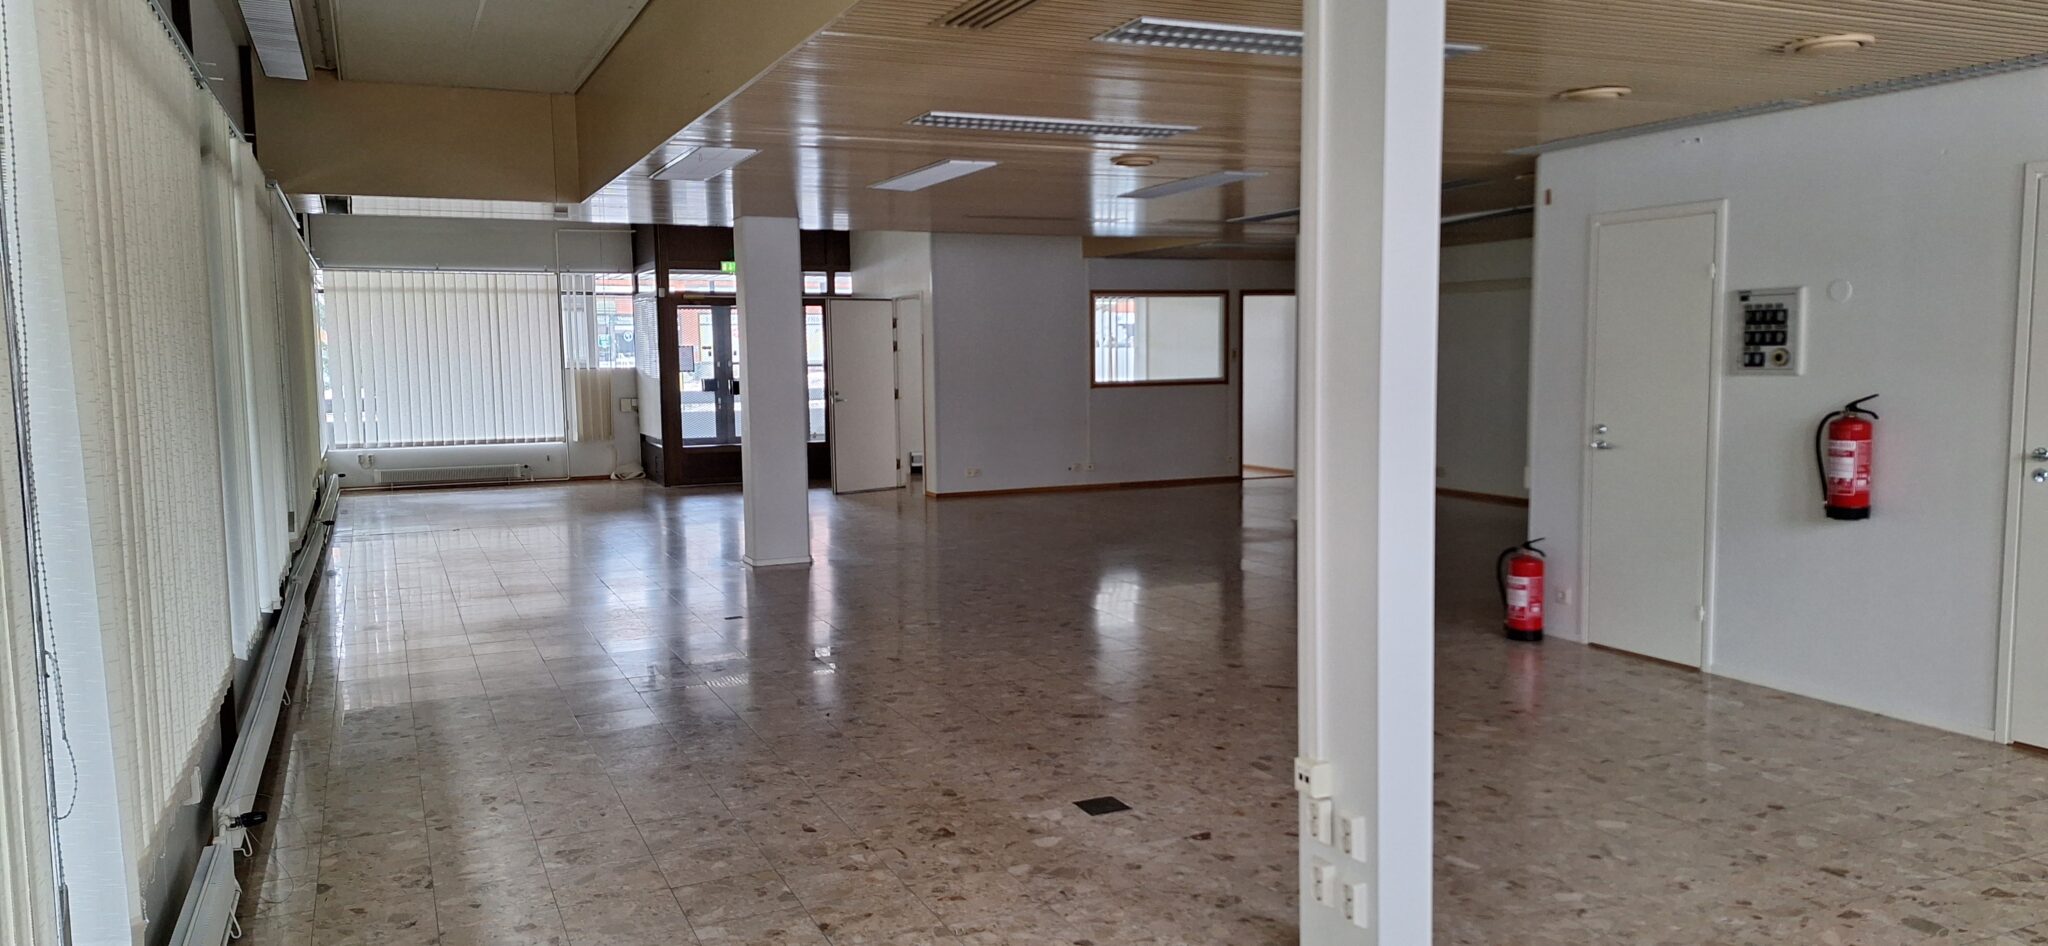 Liiketila katutasossa 172 m² + kellarikerroksessa toimisto / sosiaalitilat n. 72 m²